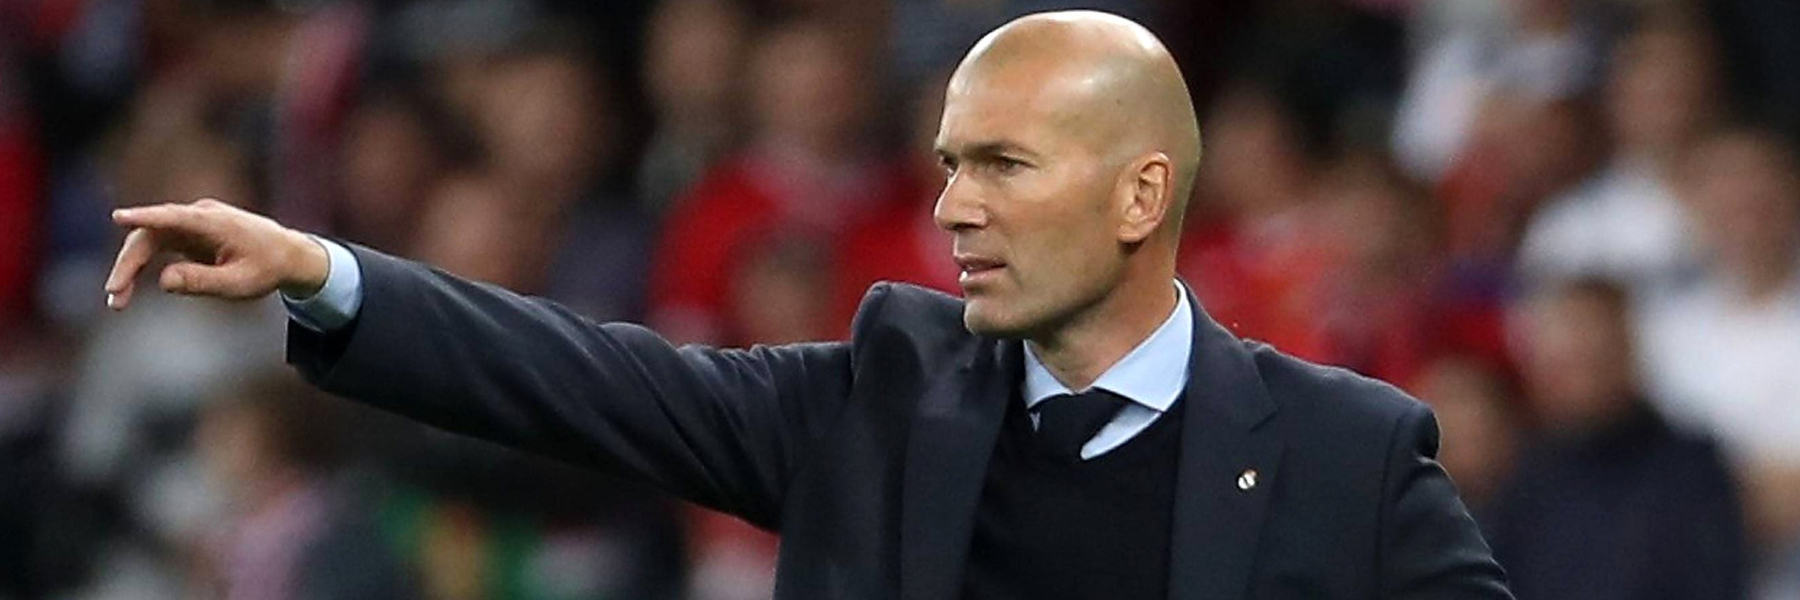 Incredibile ritorno di Zidane al Real Madrid!